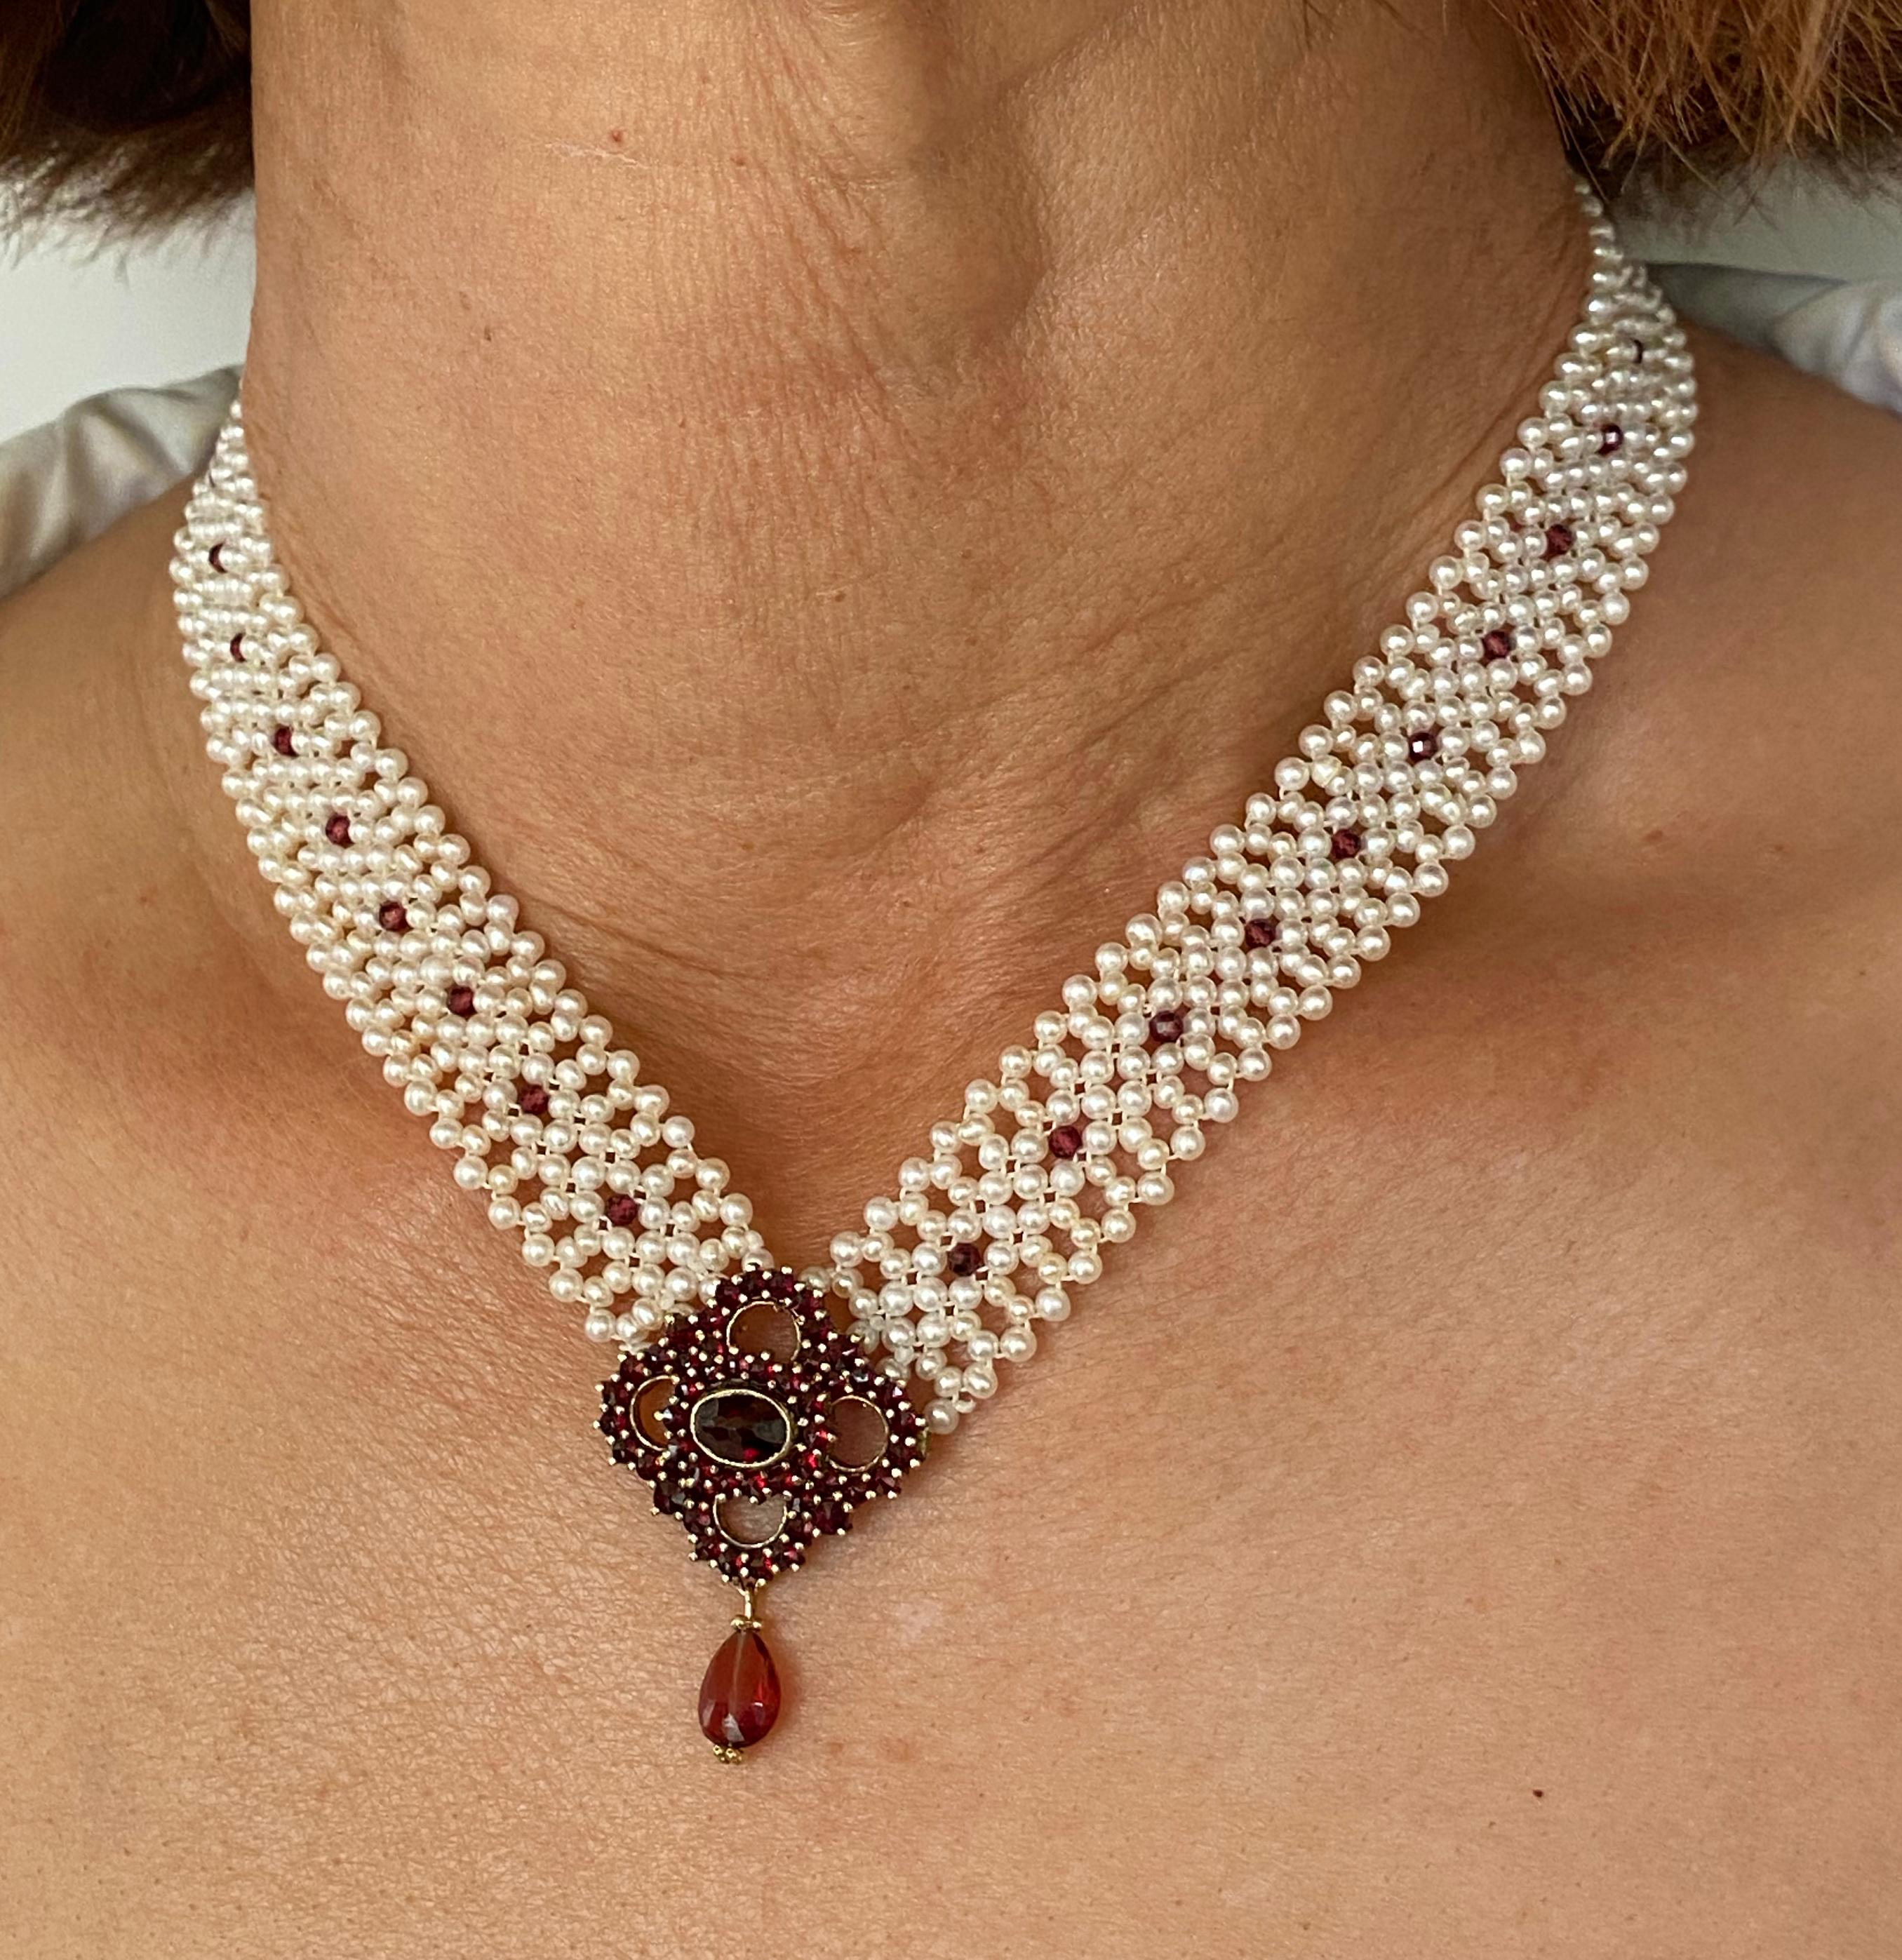 Magnifique collier en 'V' de Marina J. Cette pièce étonnante est composée de perles blanches de culture, tissées de manière complexe pour former une dentelle serrée. De petites perles de grenat sont tissées dans la bande de perles tissées. Une